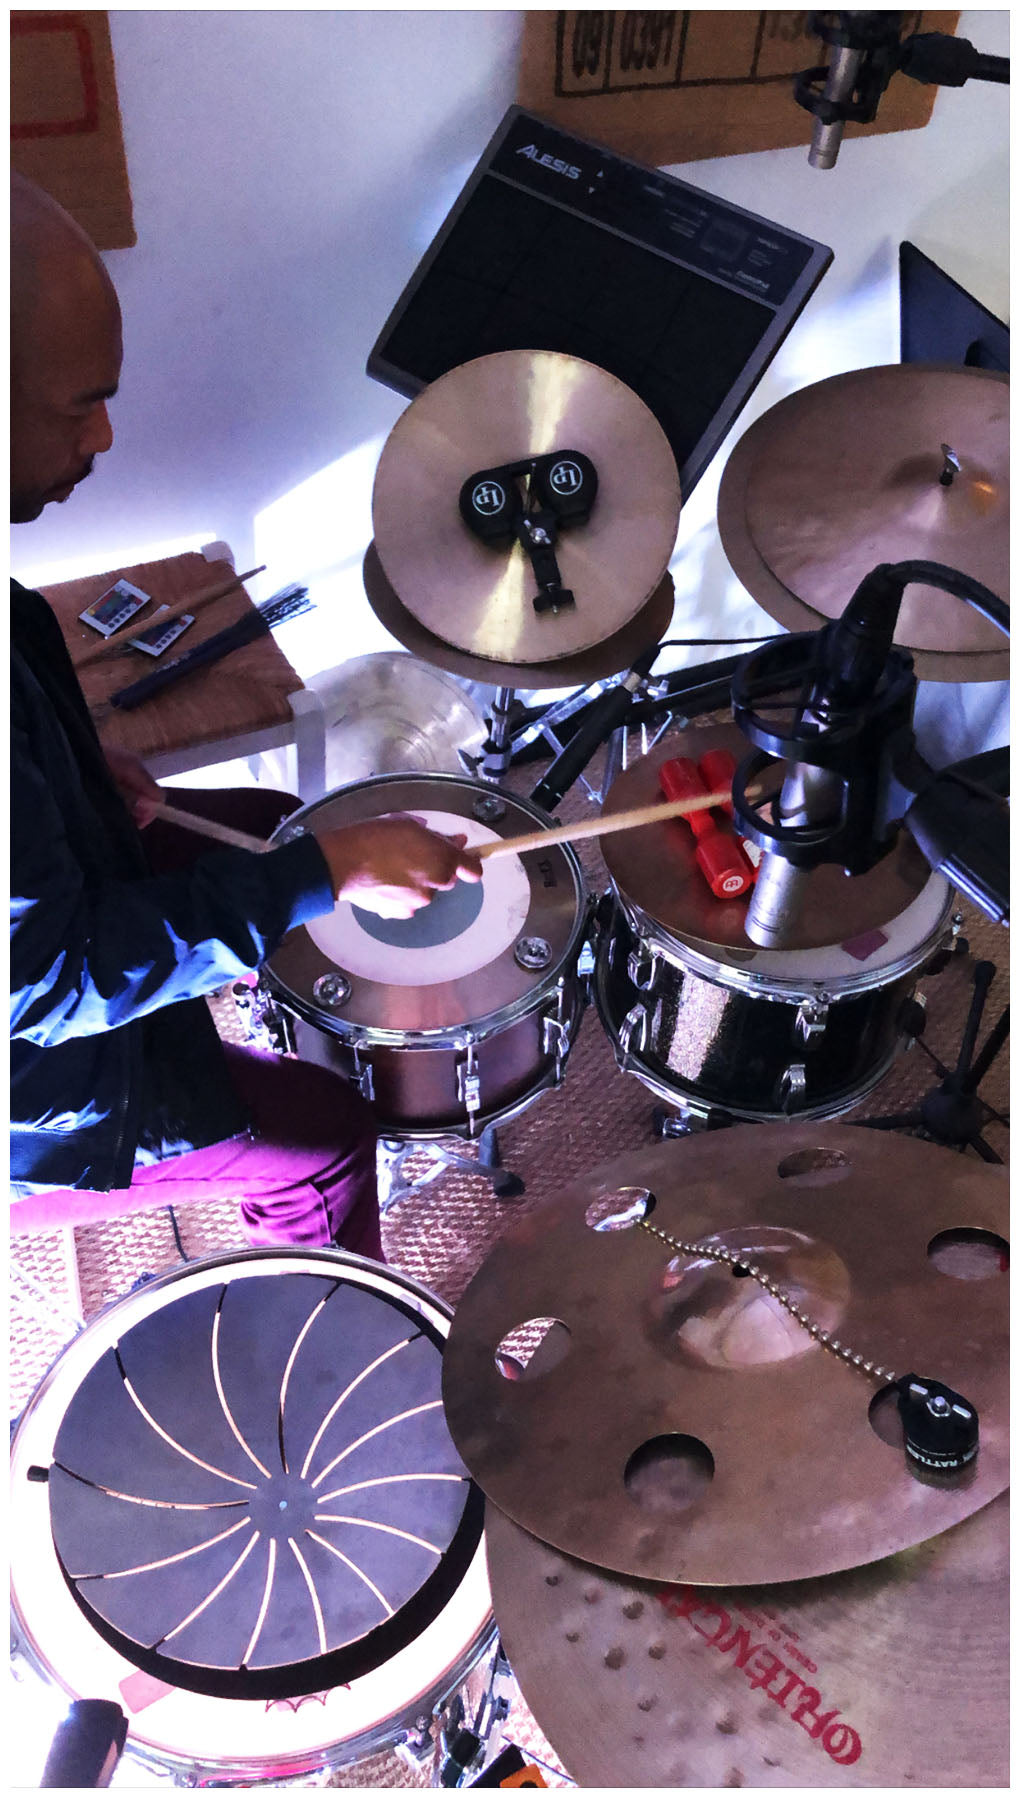 Eric Harland Drum Loop Bundle - Yurt Rock